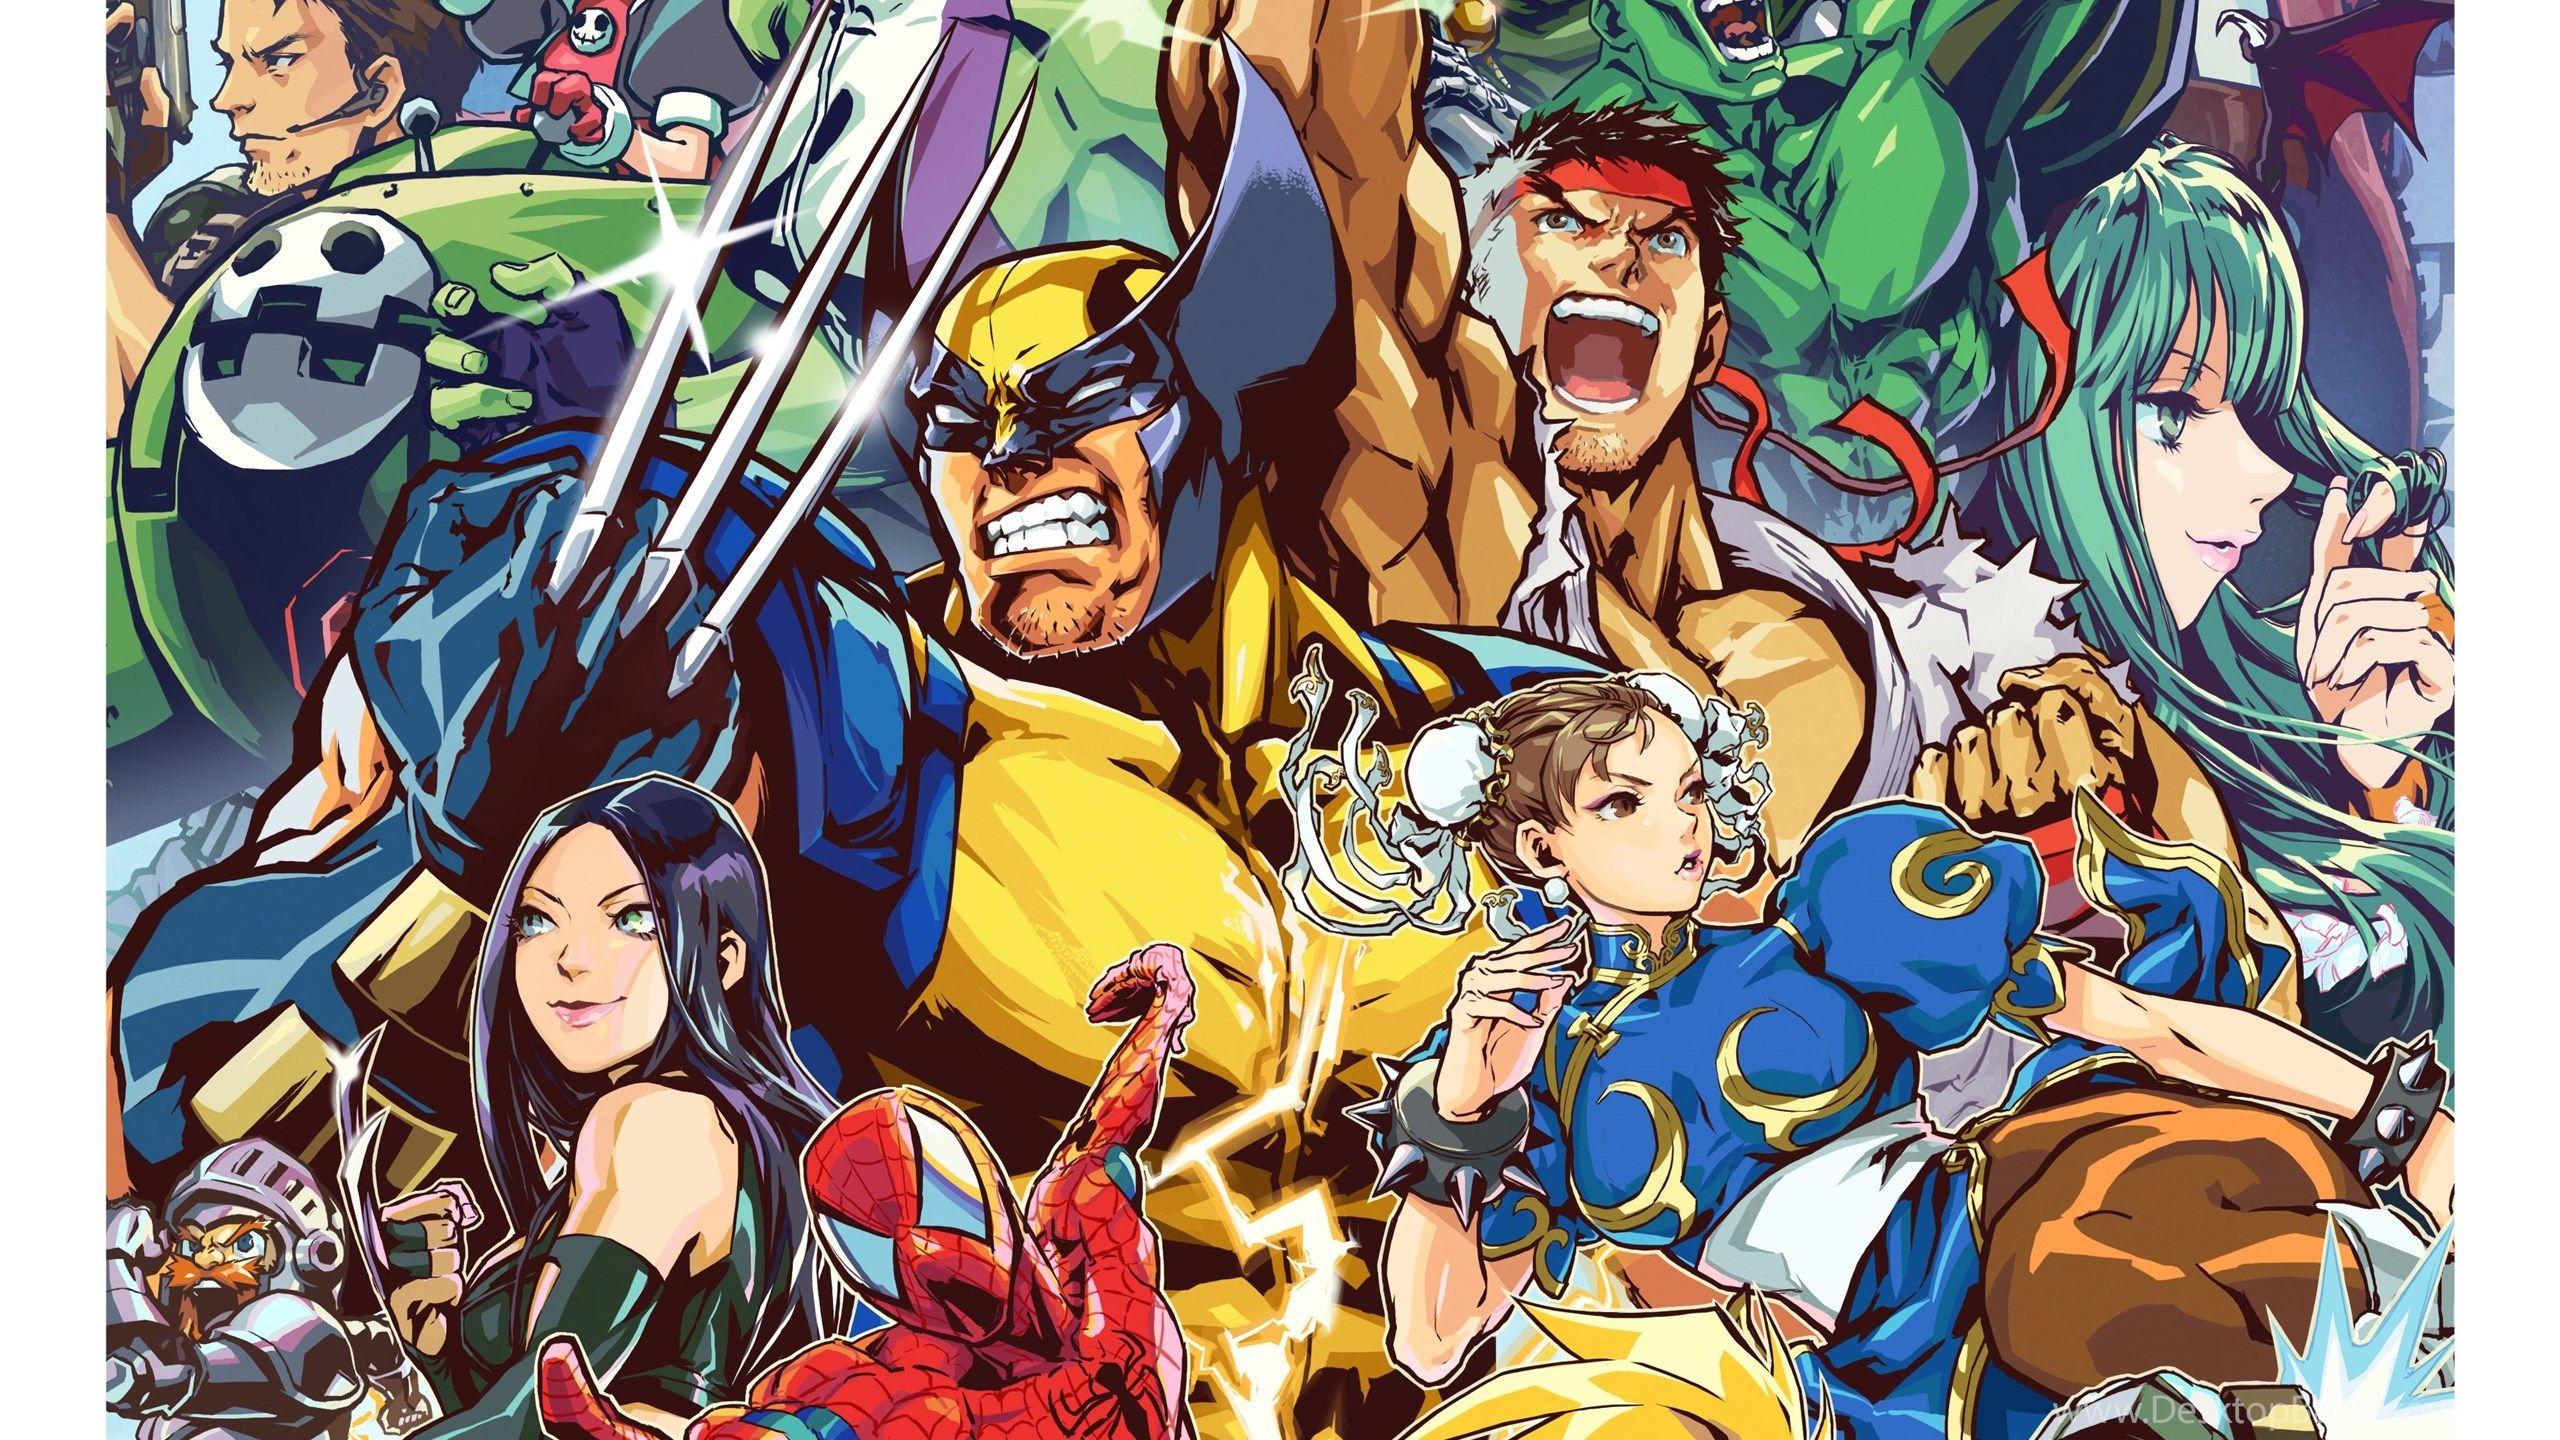 2560 x 1440 · jpeg - Marvel Vs. Capcom Wallpapers - Top Free Marvel Vs. Capcom Backgrounds ...